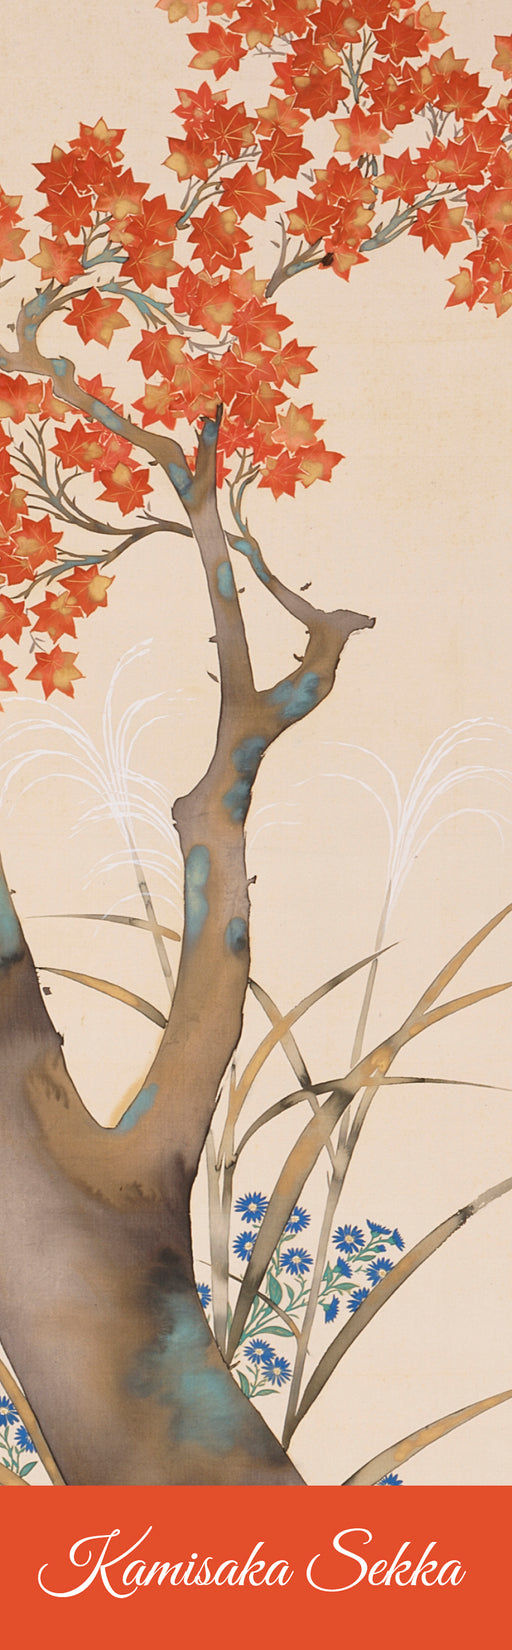 Kamisaka Sekka: Autumn Maple Bookmark_Front_Flat